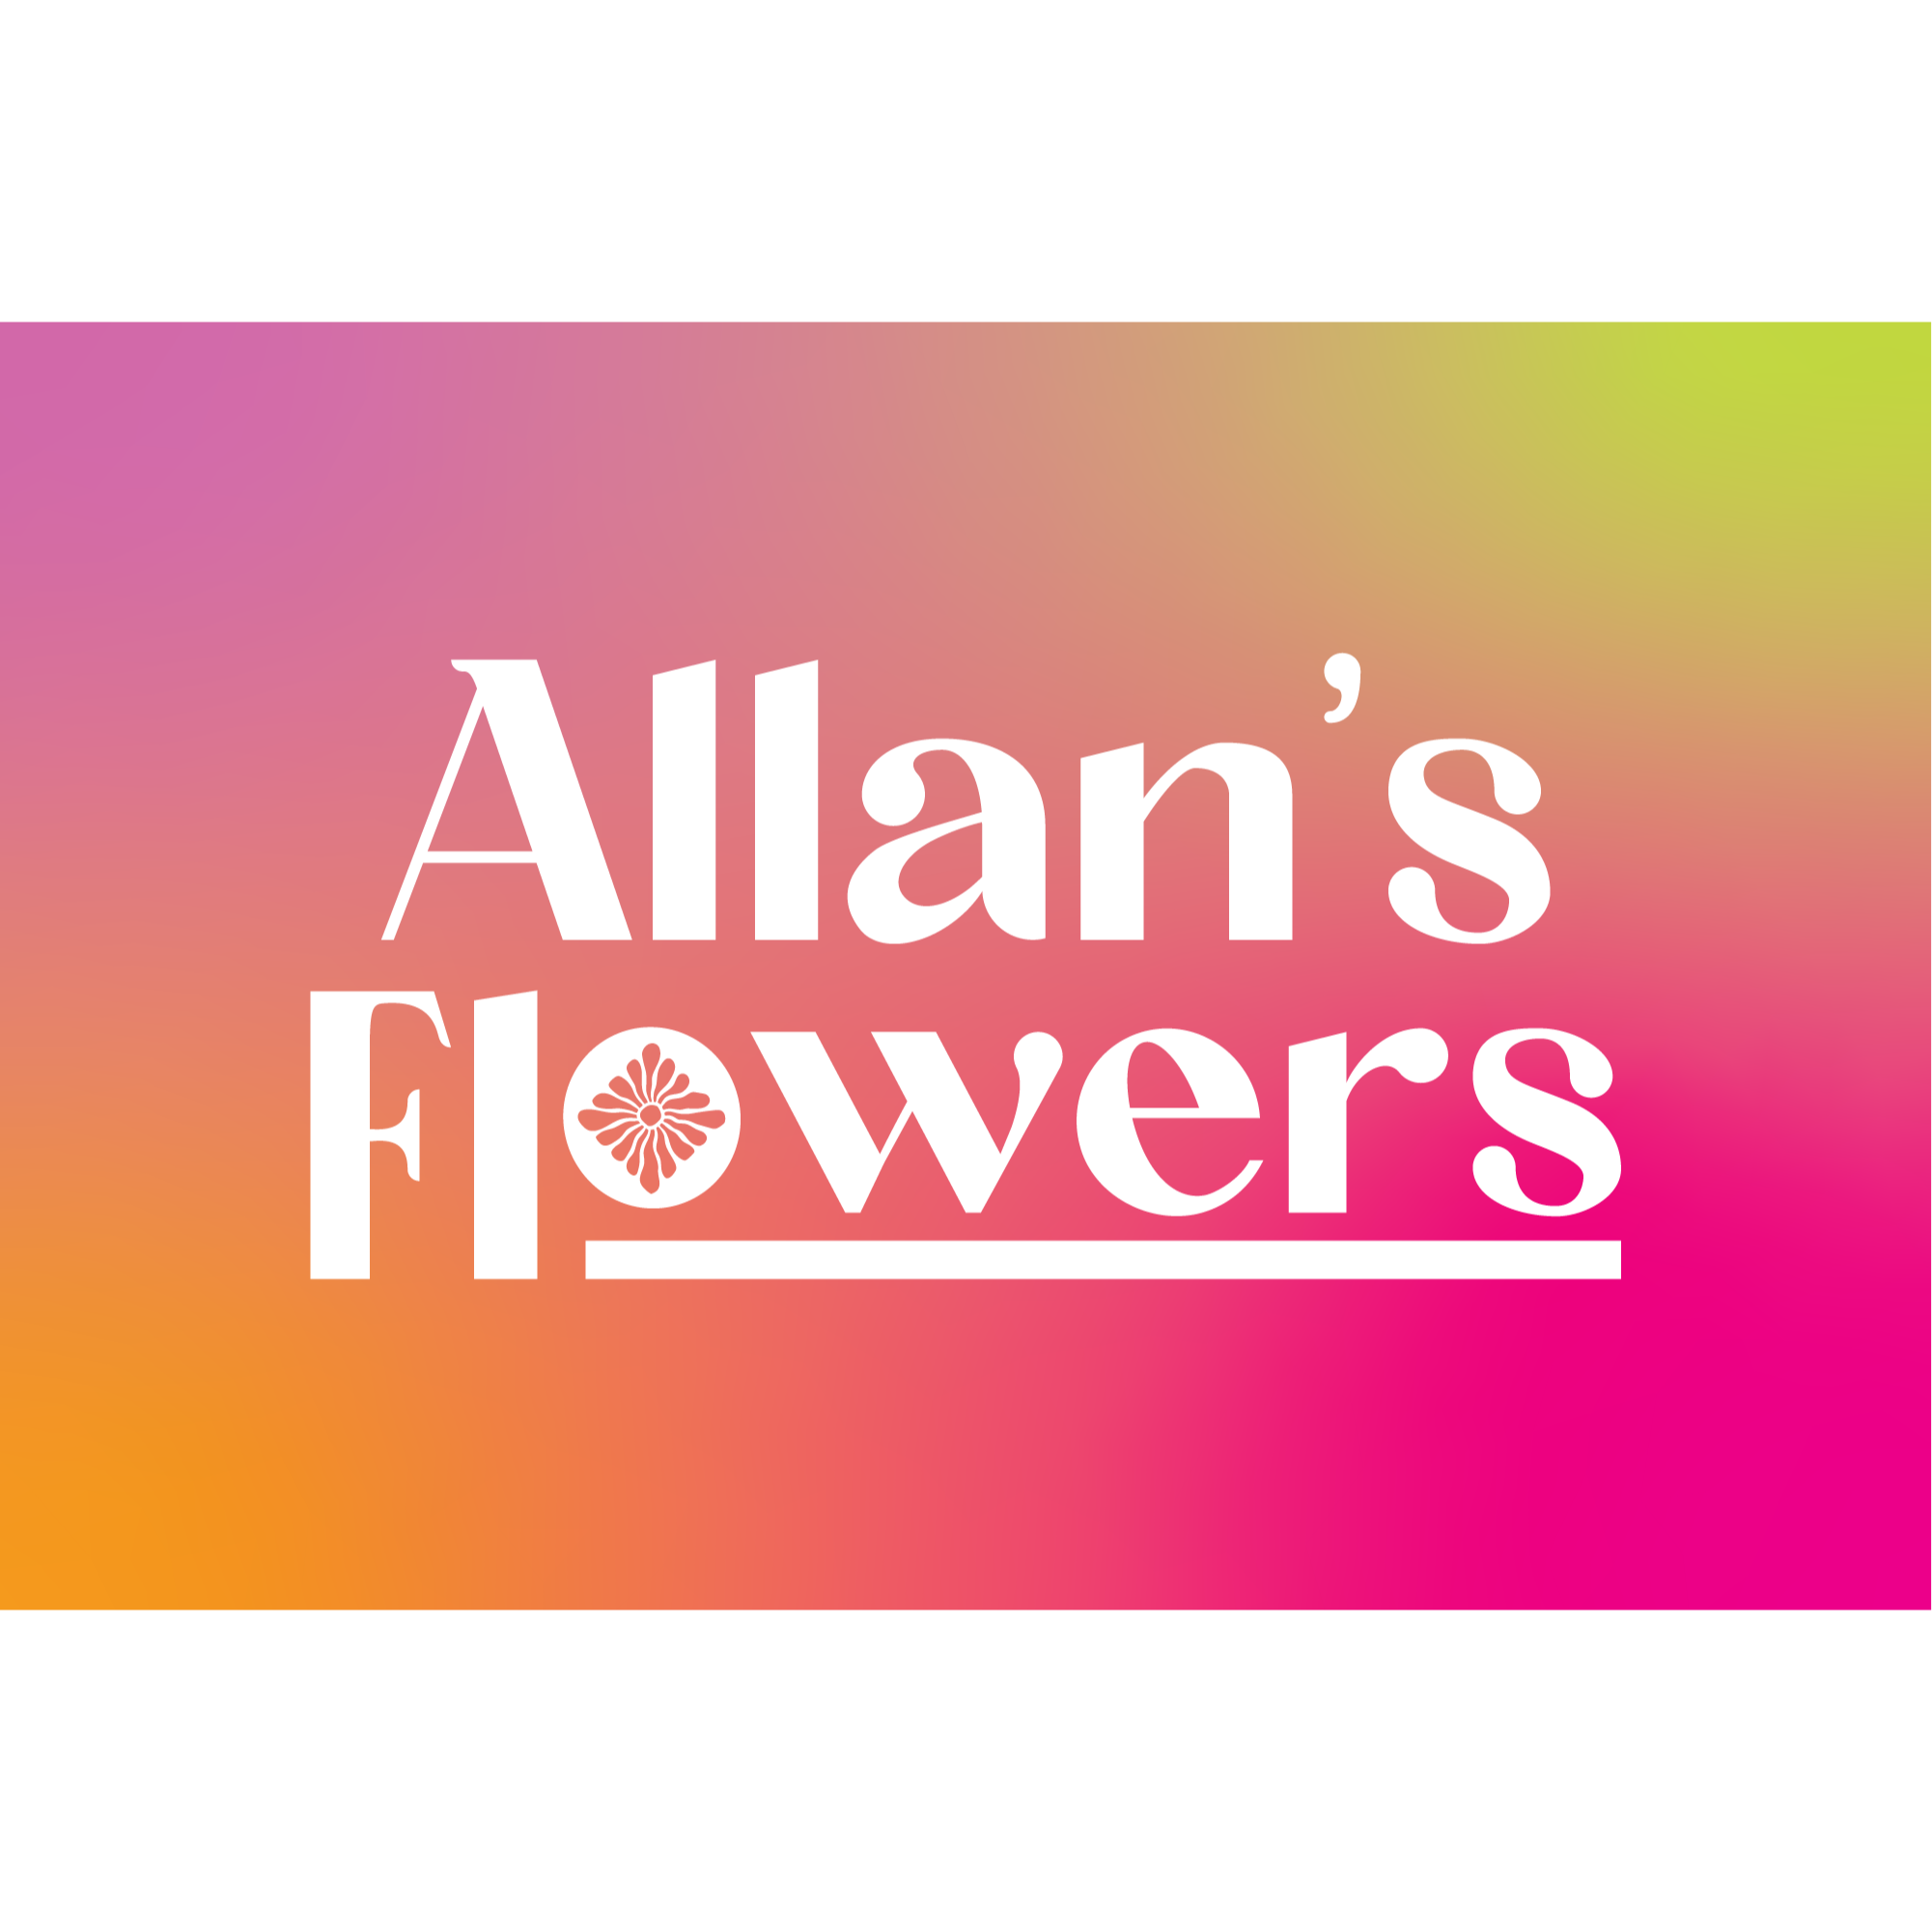 Allan's Flowers & More - Prescott, AZ 86301 - (928)445-5131 | ShowMeLocal.com